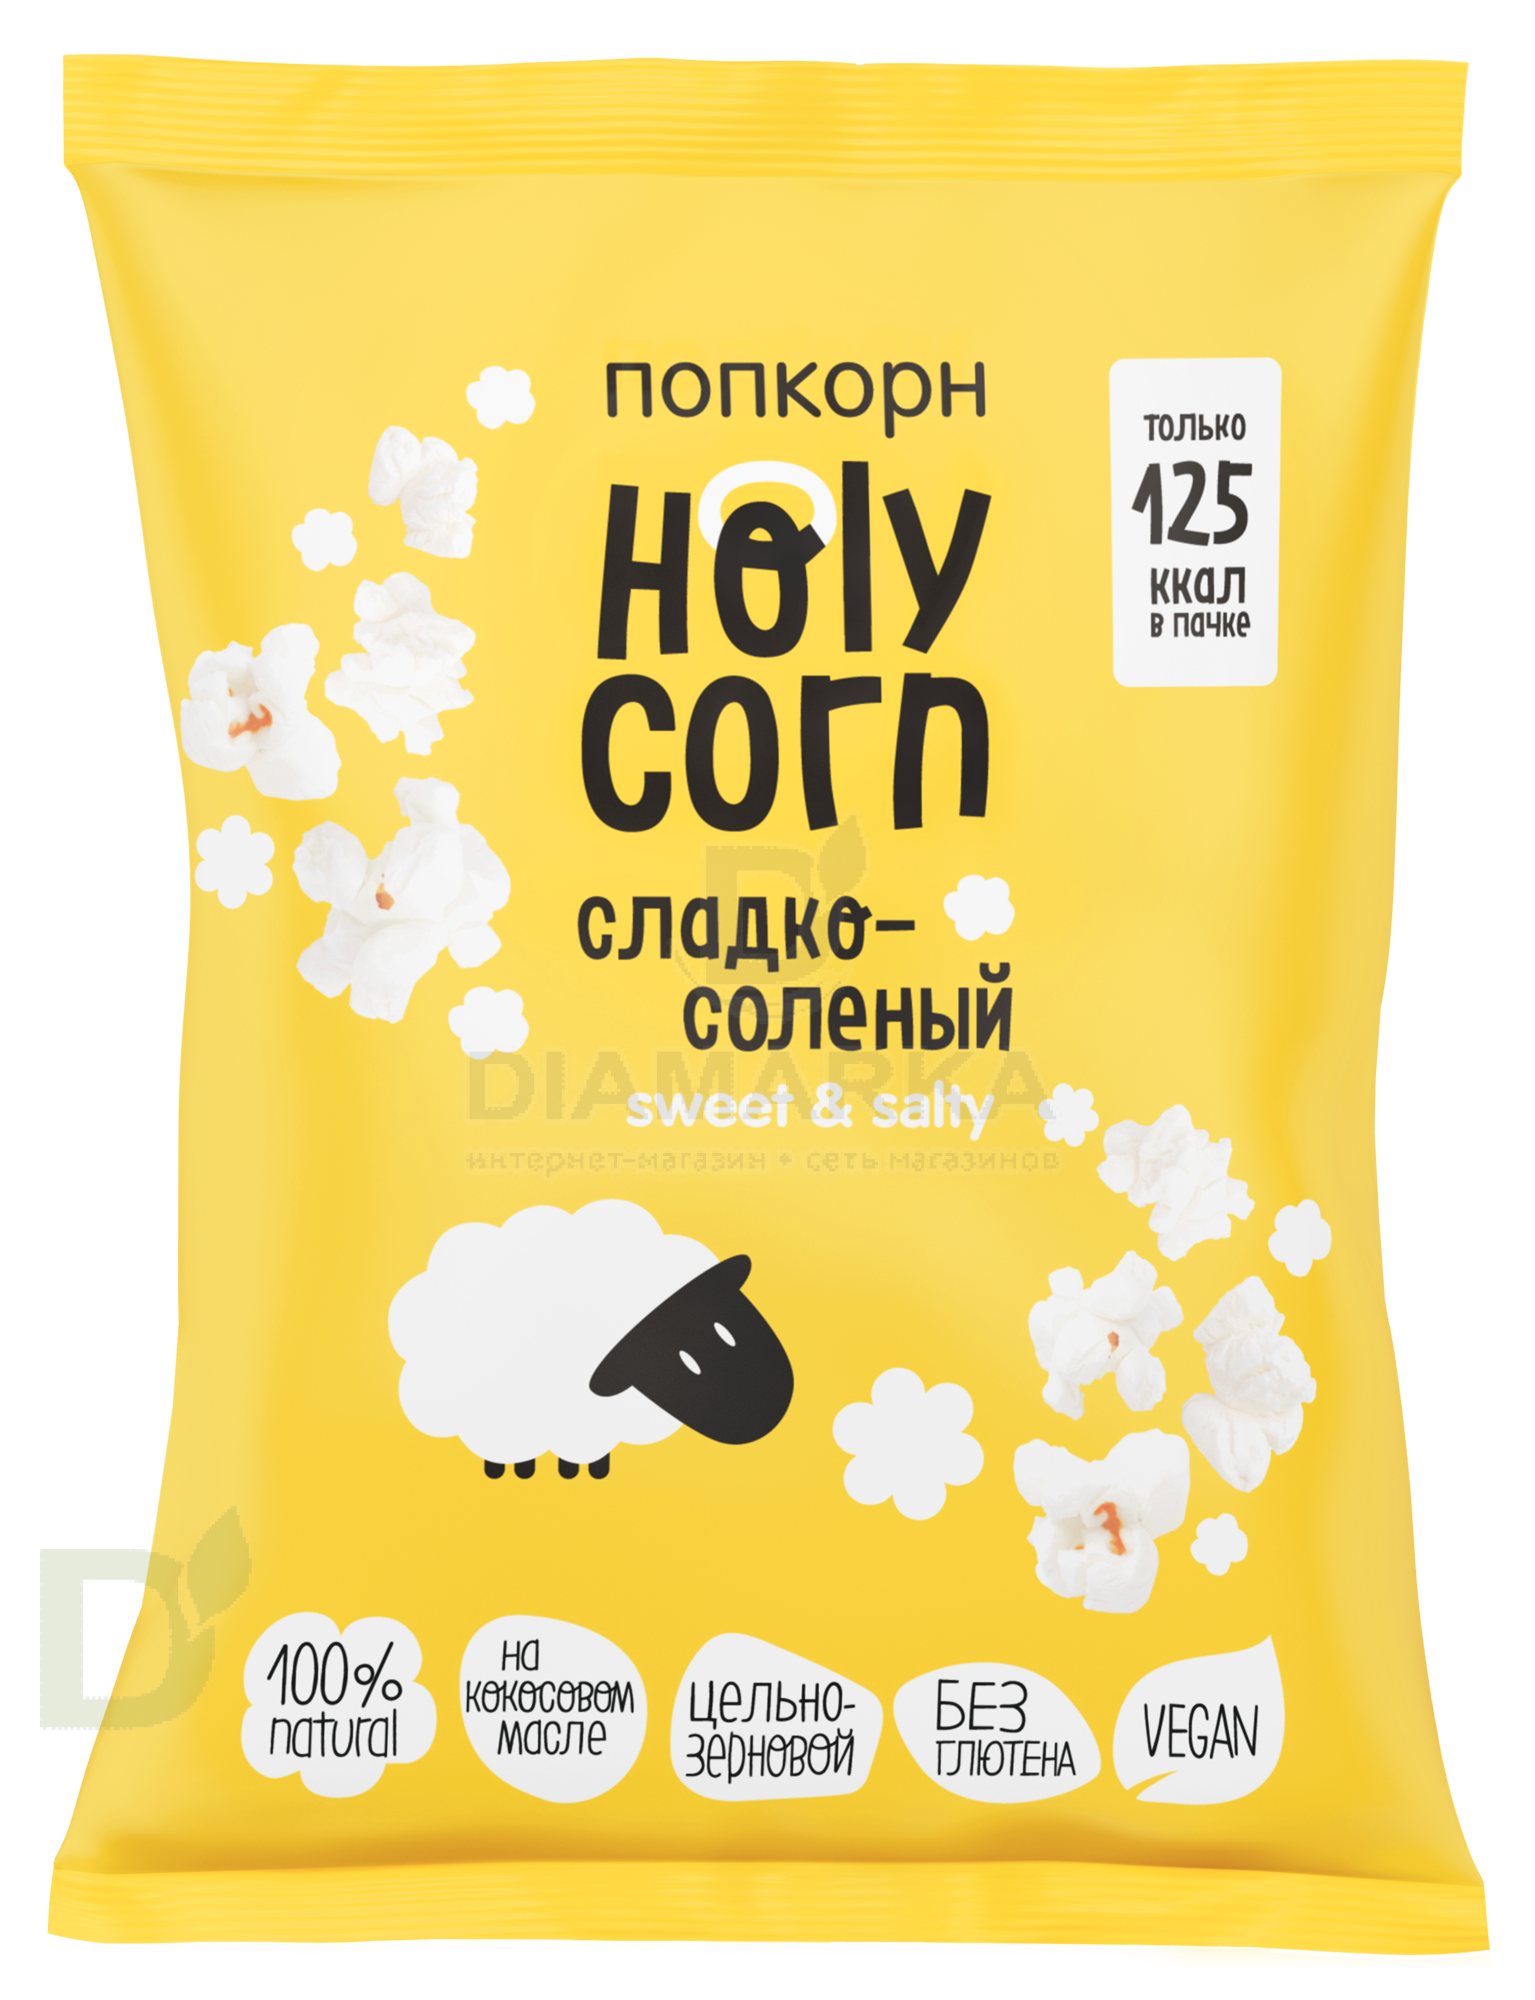 Попкорн Holy Corn "Сладко-соленый" 30г.